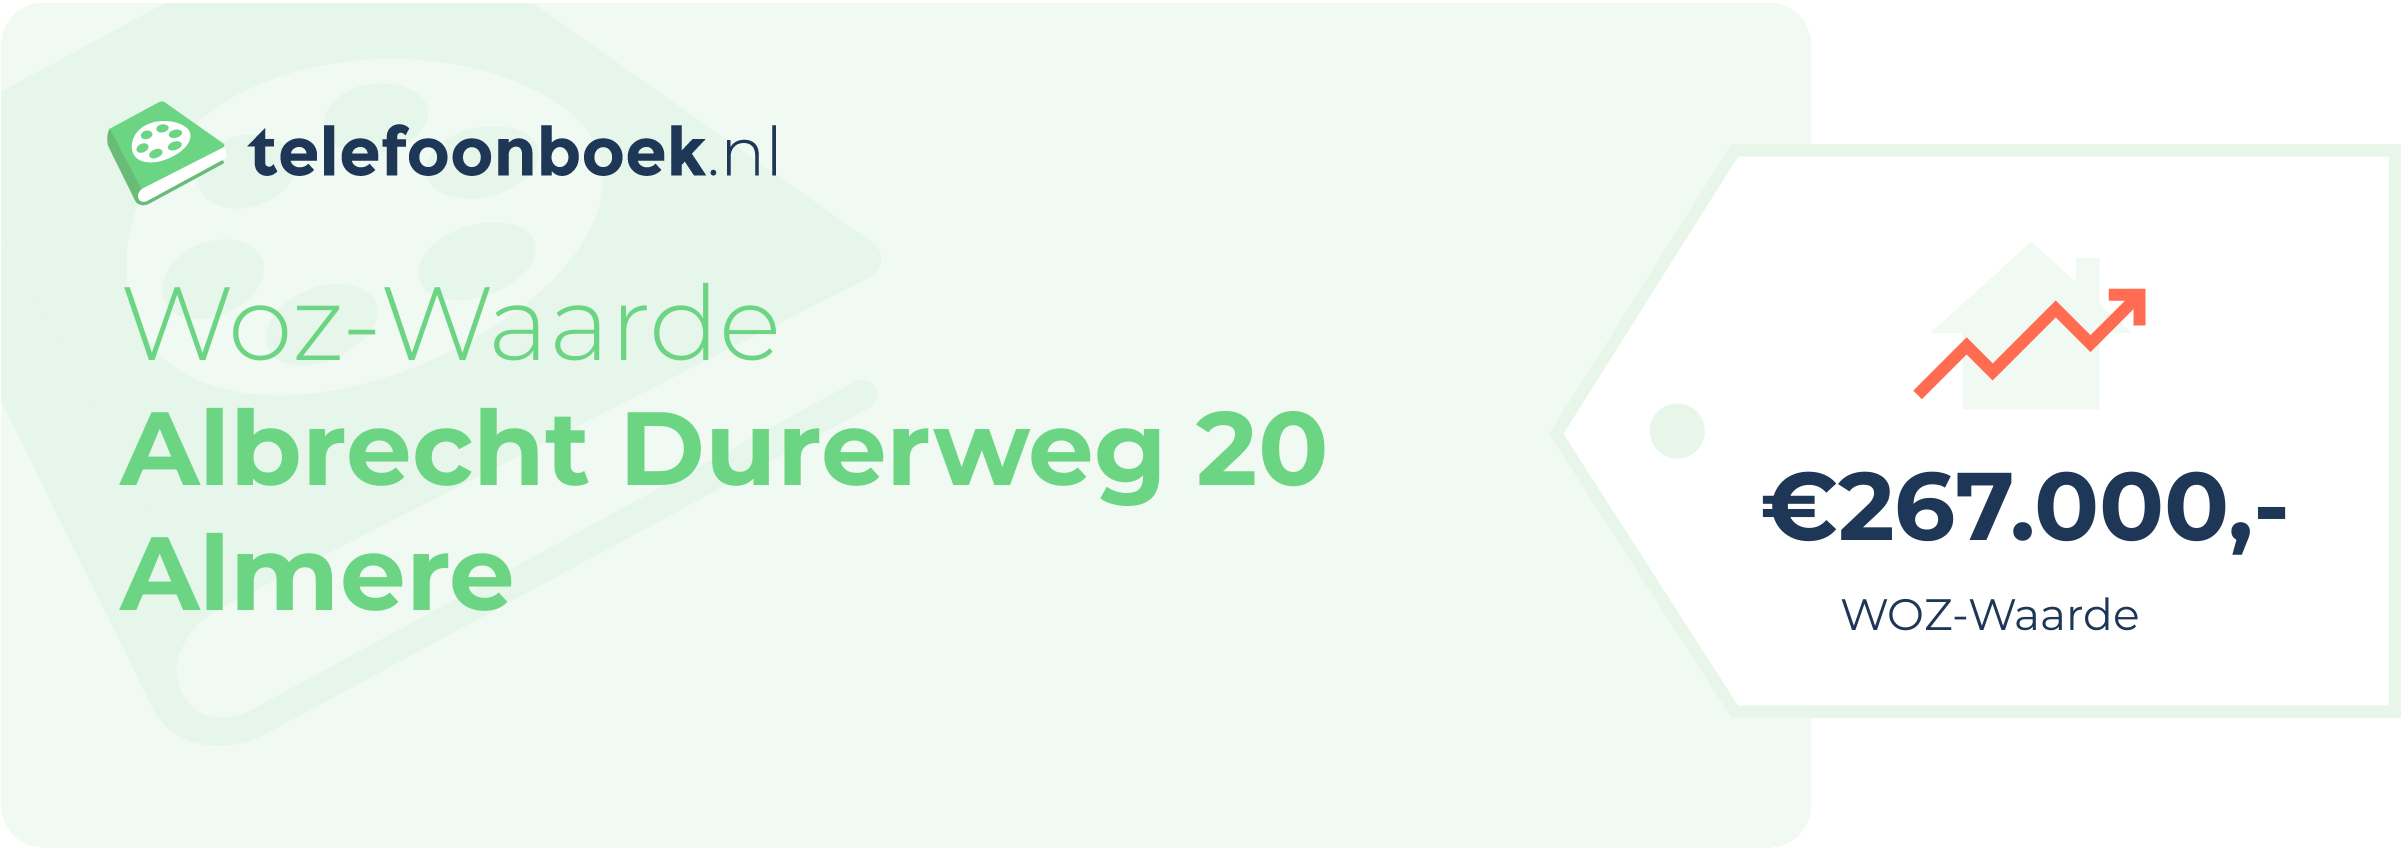 WOZ-waarde Albrecht Durerweg 20 Almere